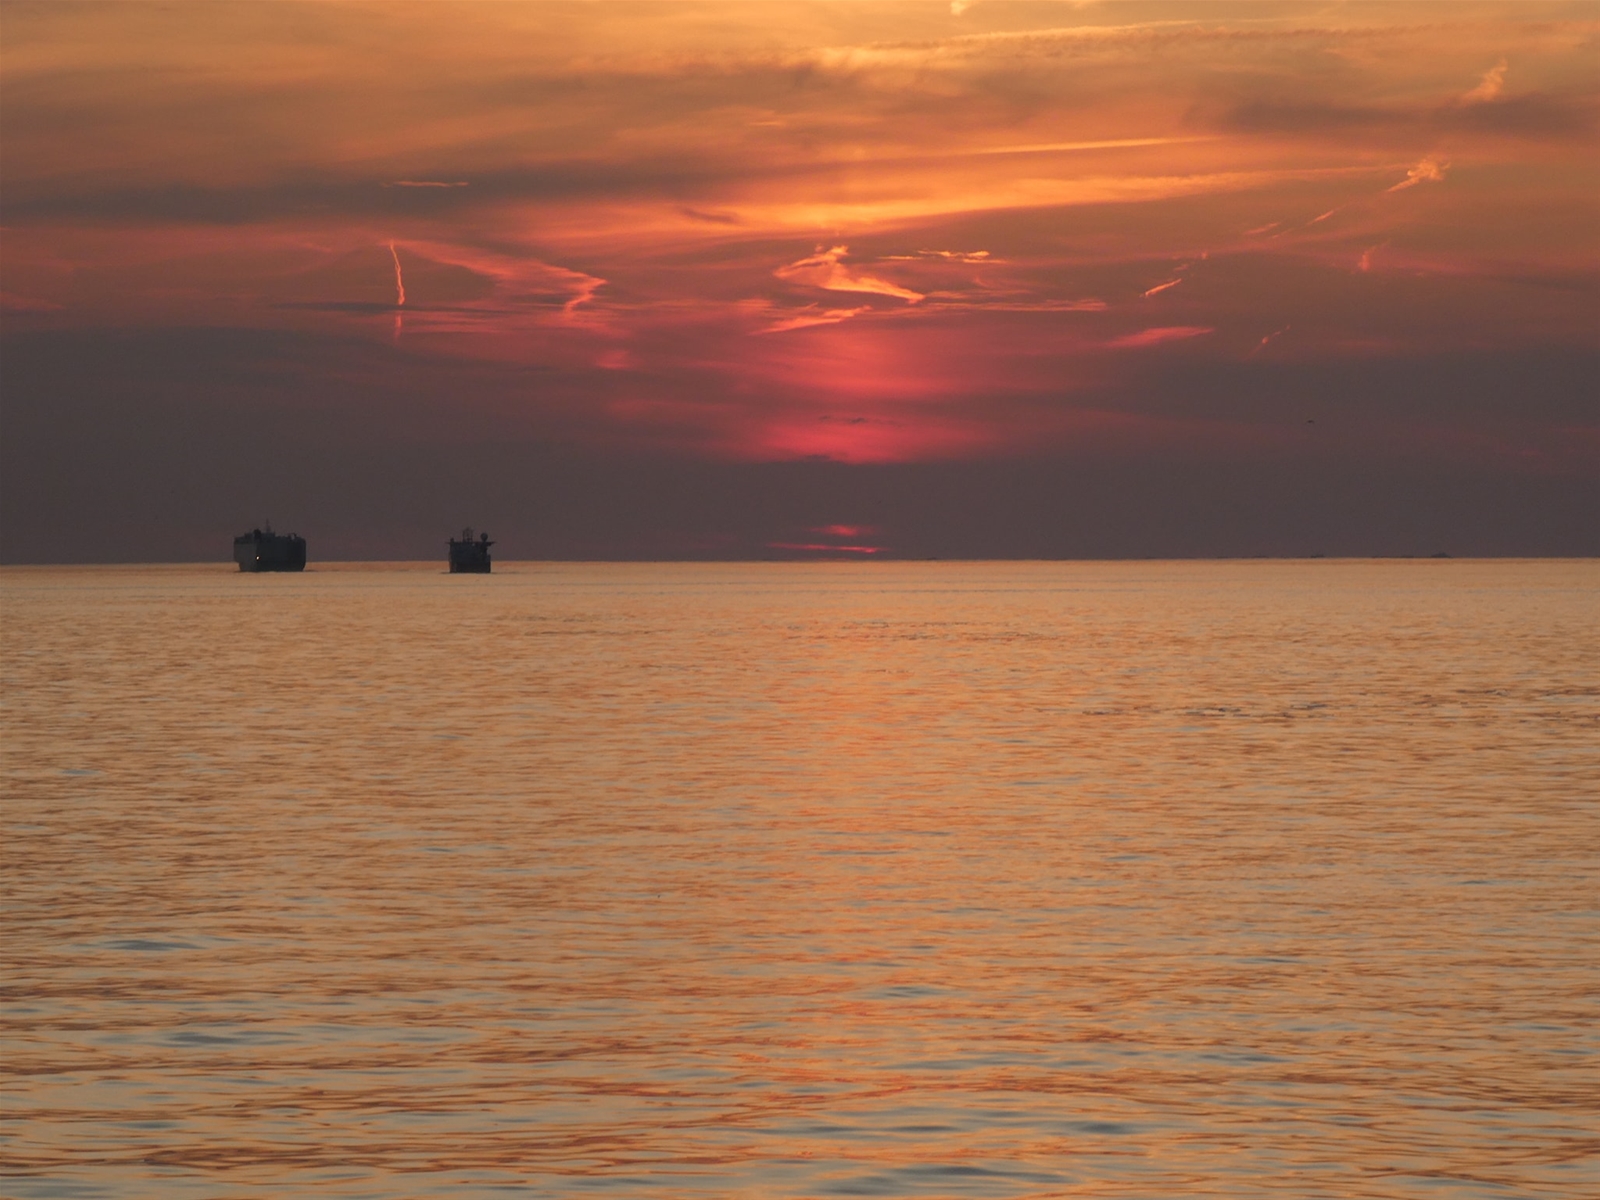 Vissersboten op de Noordzee tijdens zonsondergang.